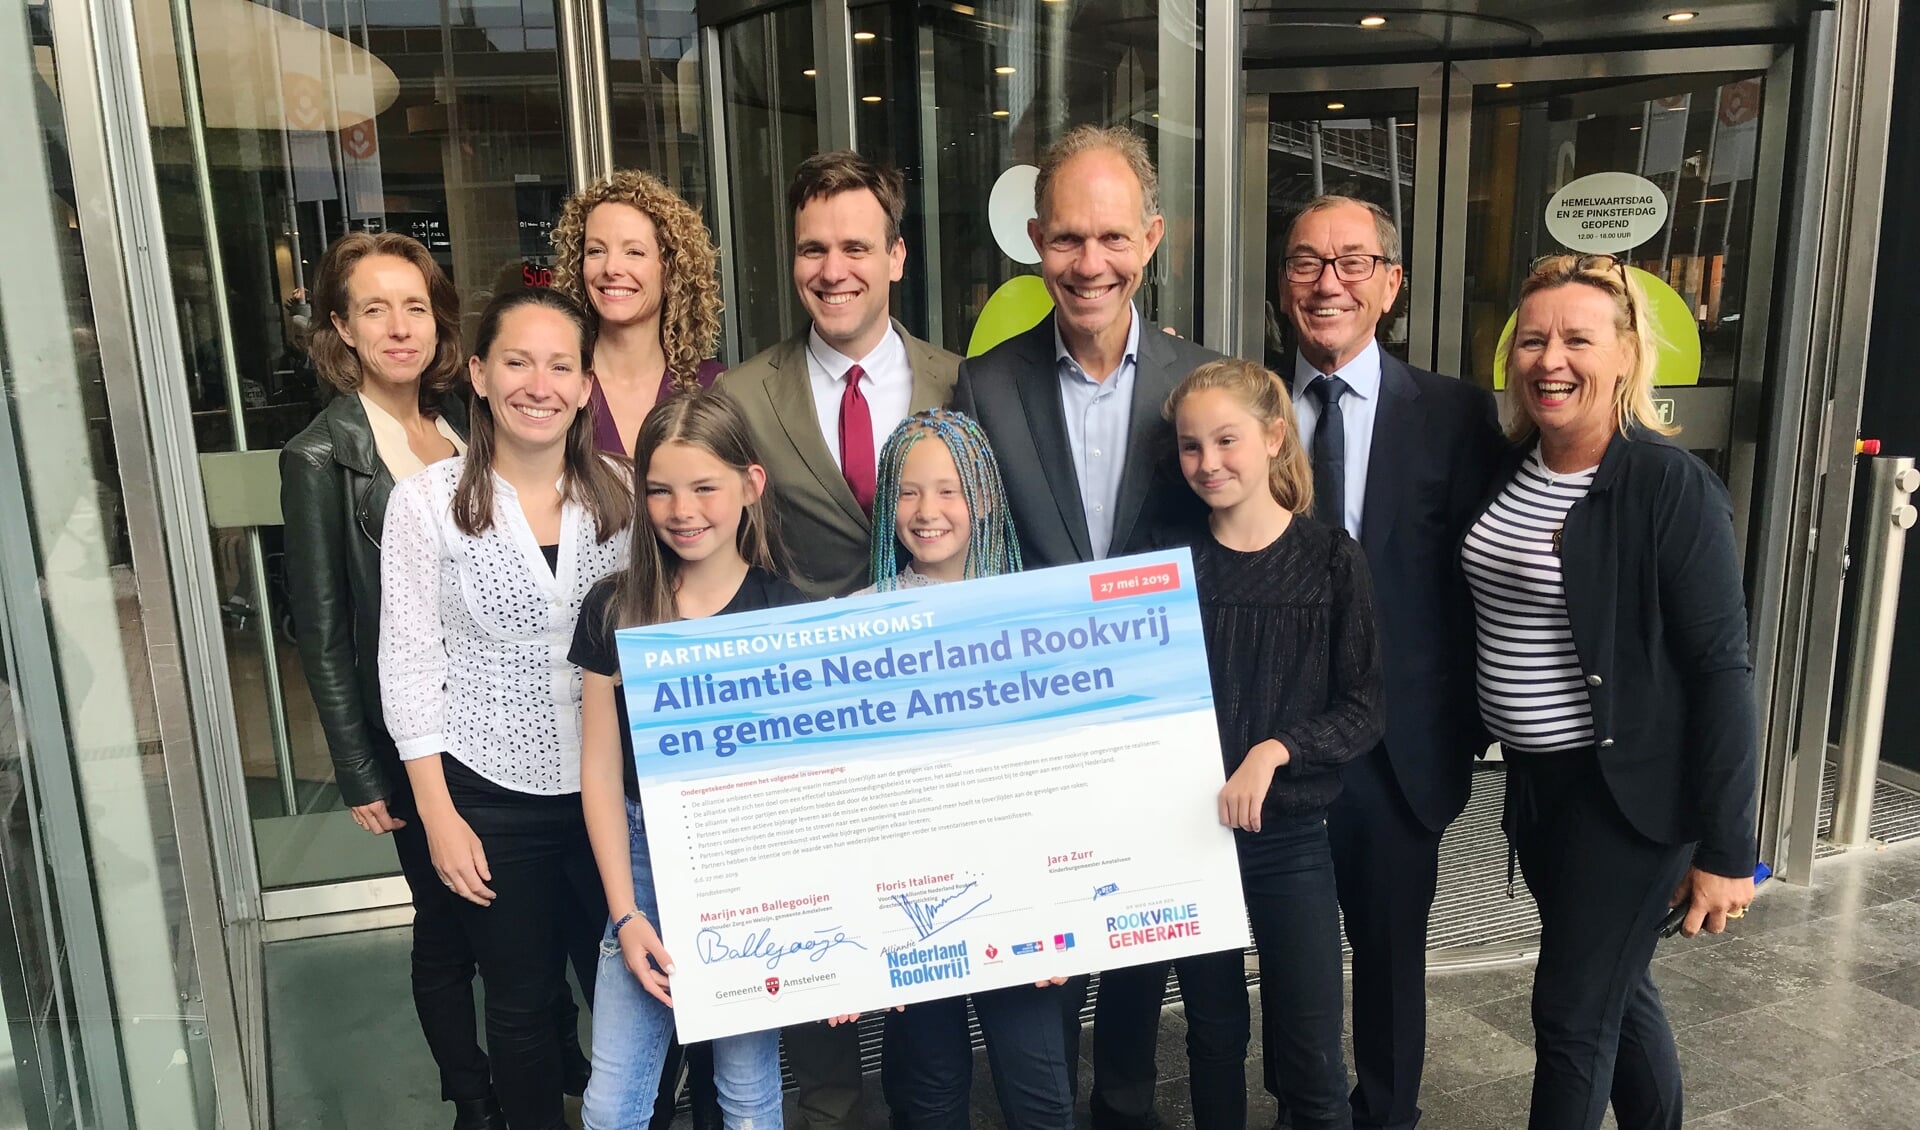 Gemeente Amstelveen is eind mei partner geworden van de Alliantie Nederland Rookvrij. 